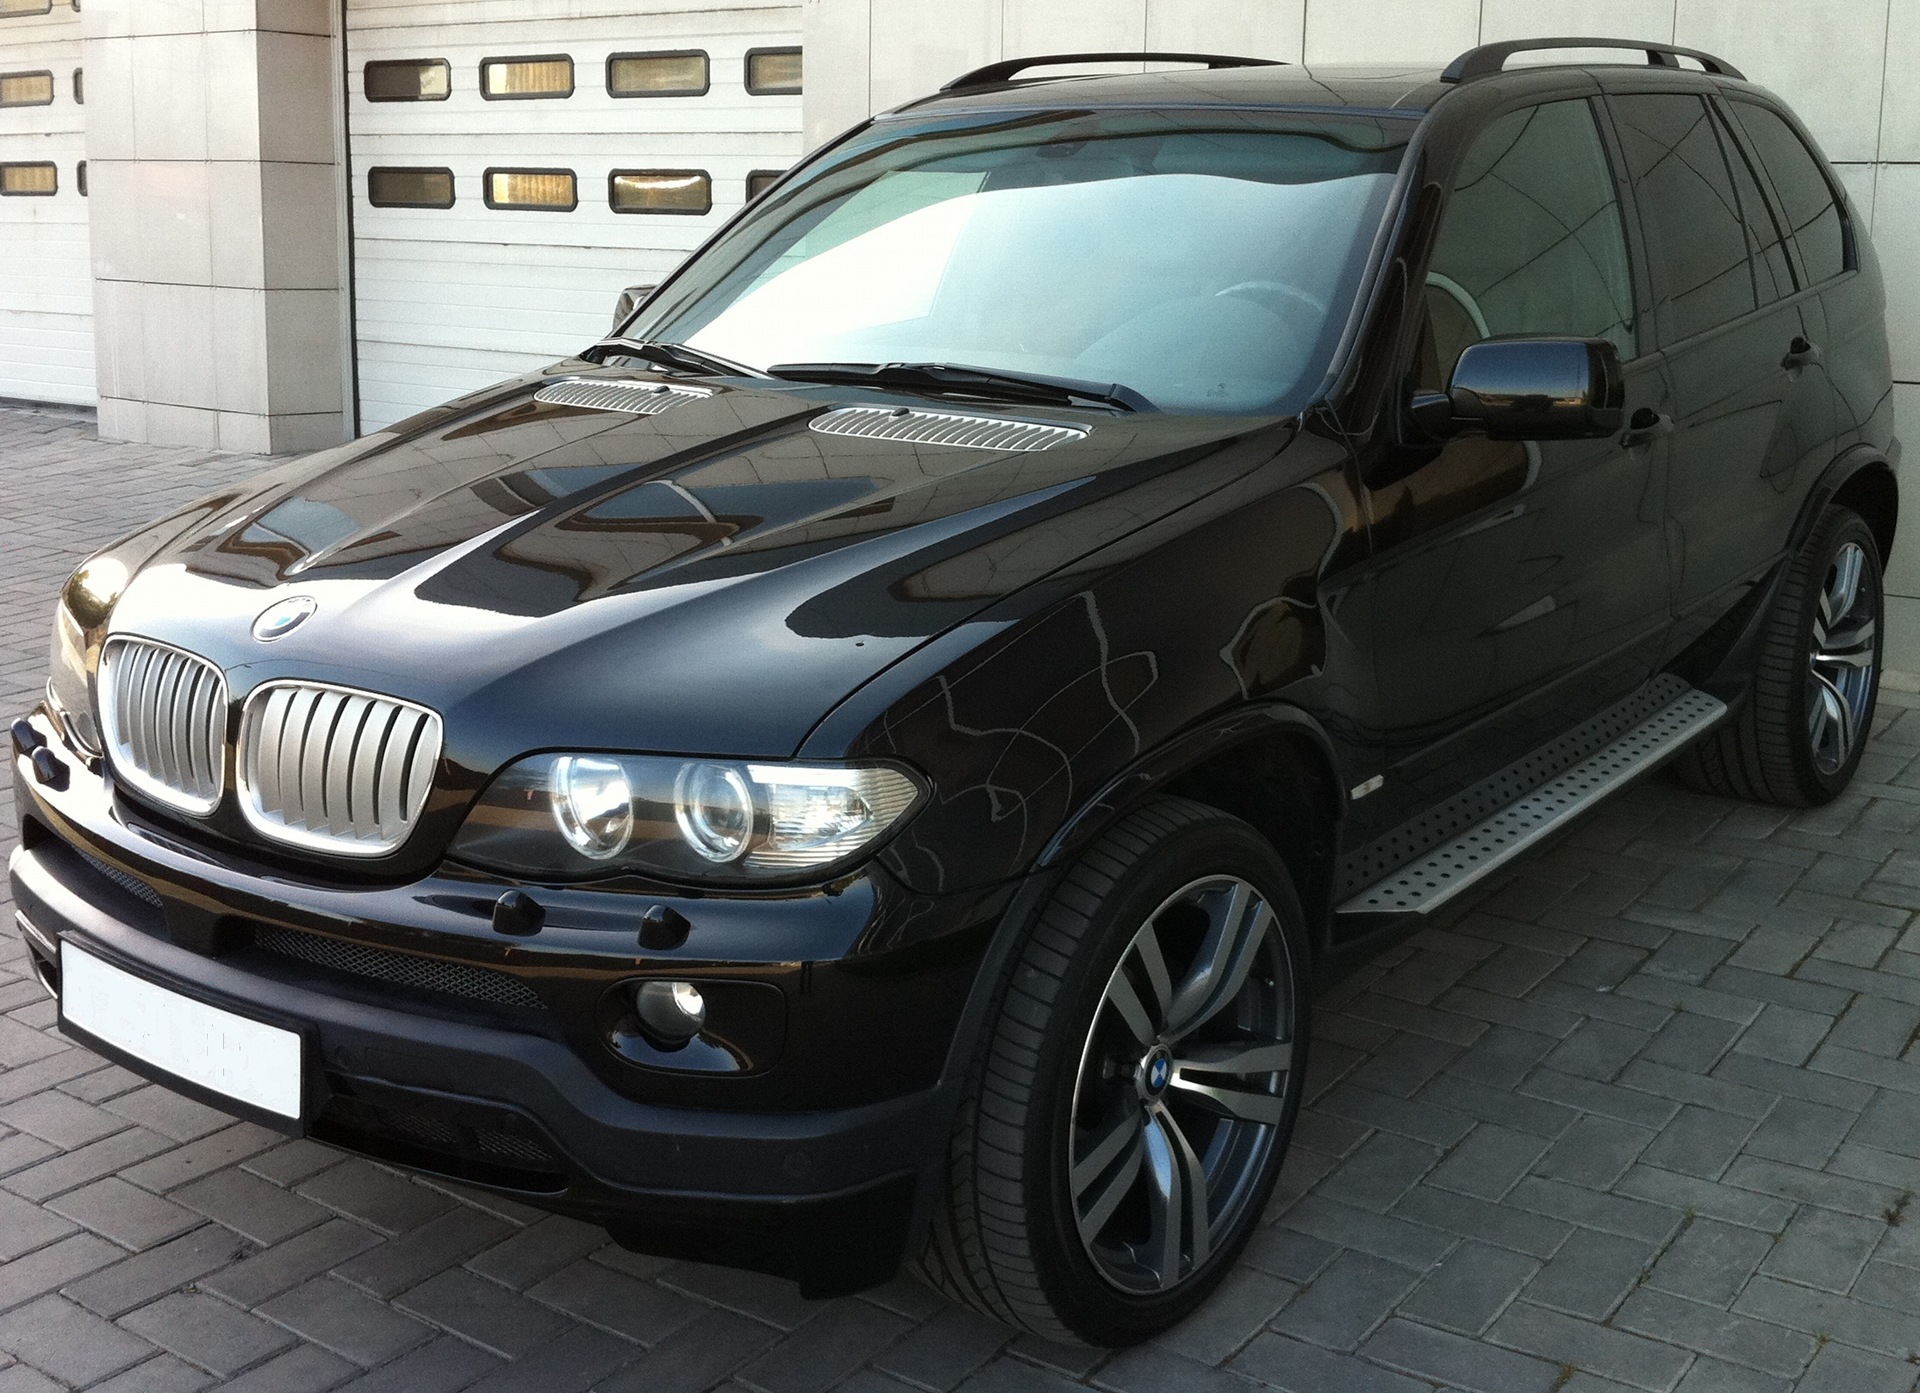 BMW x5 e53 2008